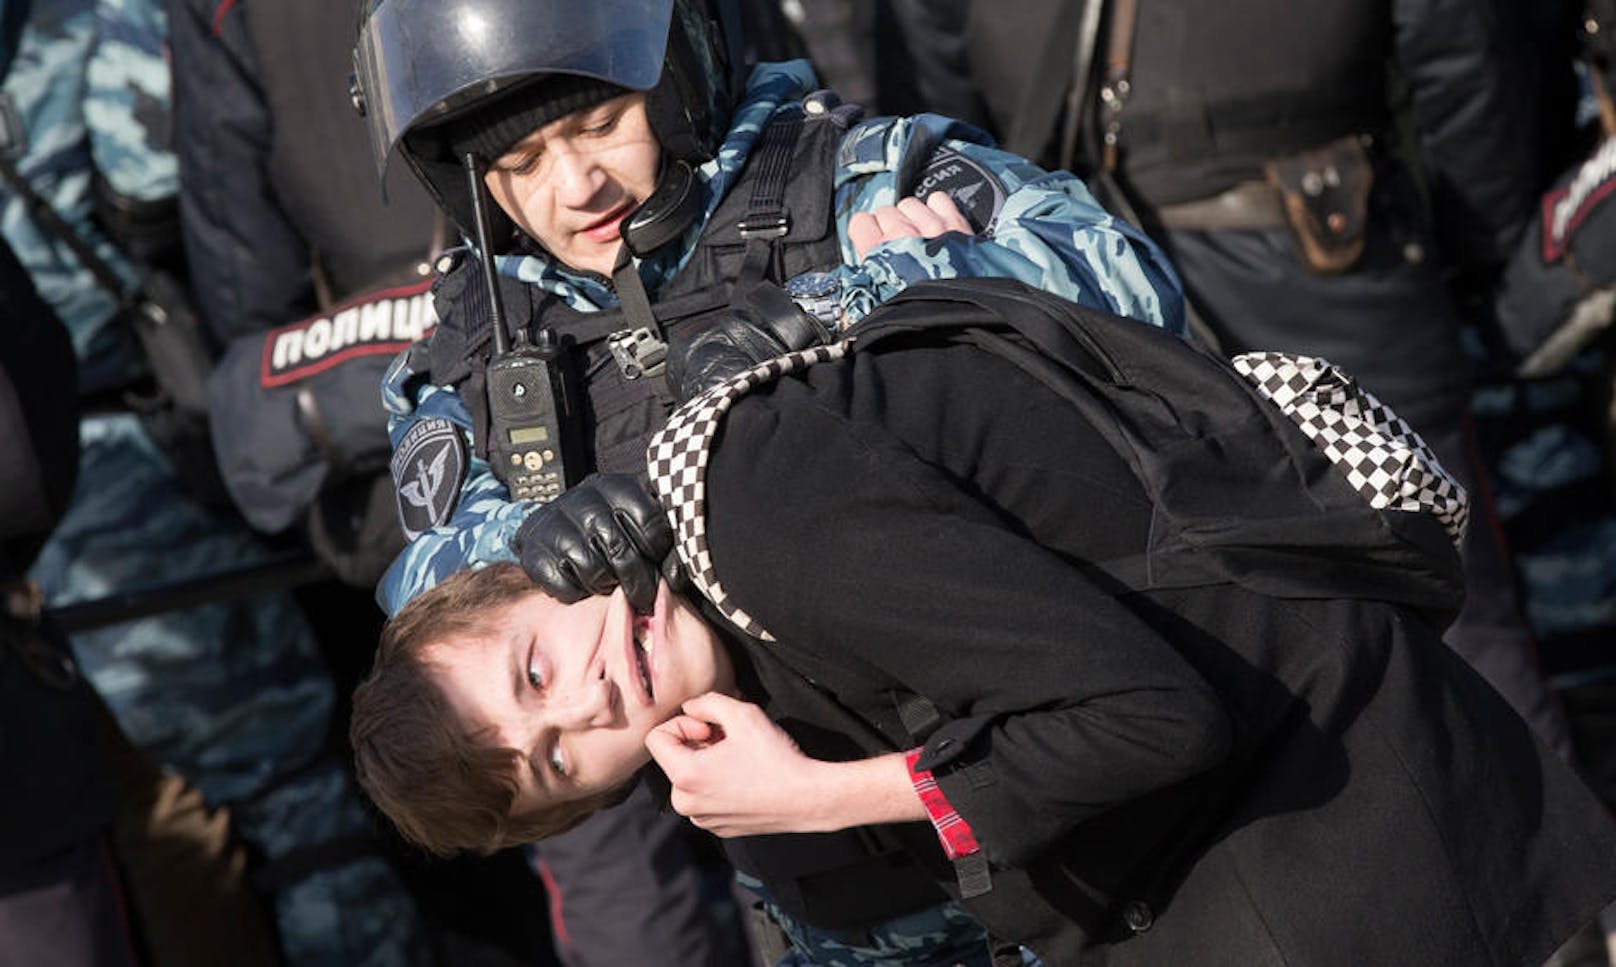 26.03.2017: Ein russischer Polizist nimmt einen Demonstranten in Moskau fest. Am Sonntag demonstrierten Tausende am Puschkinplatz gegen die grassierende Korruption im Land. Die Polizei nahm Dutzende Demonstranten fest. (Foto: AP)